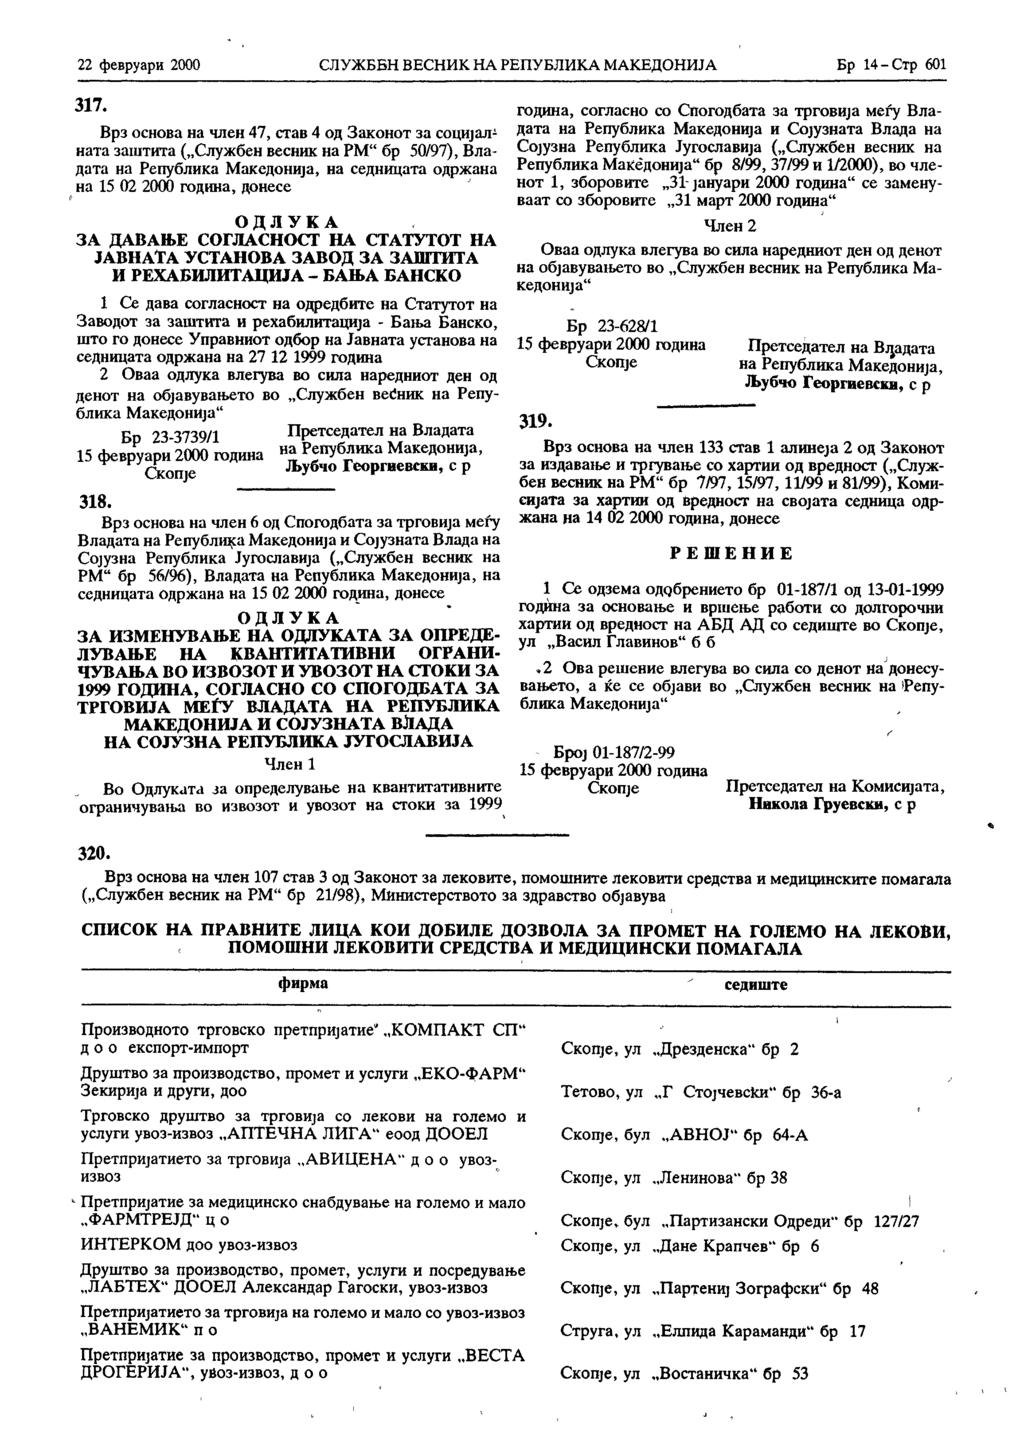 22 февруари 2000 СЛУЖБЕН ВЕСНИК НА РЕПУБЛИКА МАКЕДОНИЈА Бр 14 - Стр 601 317.